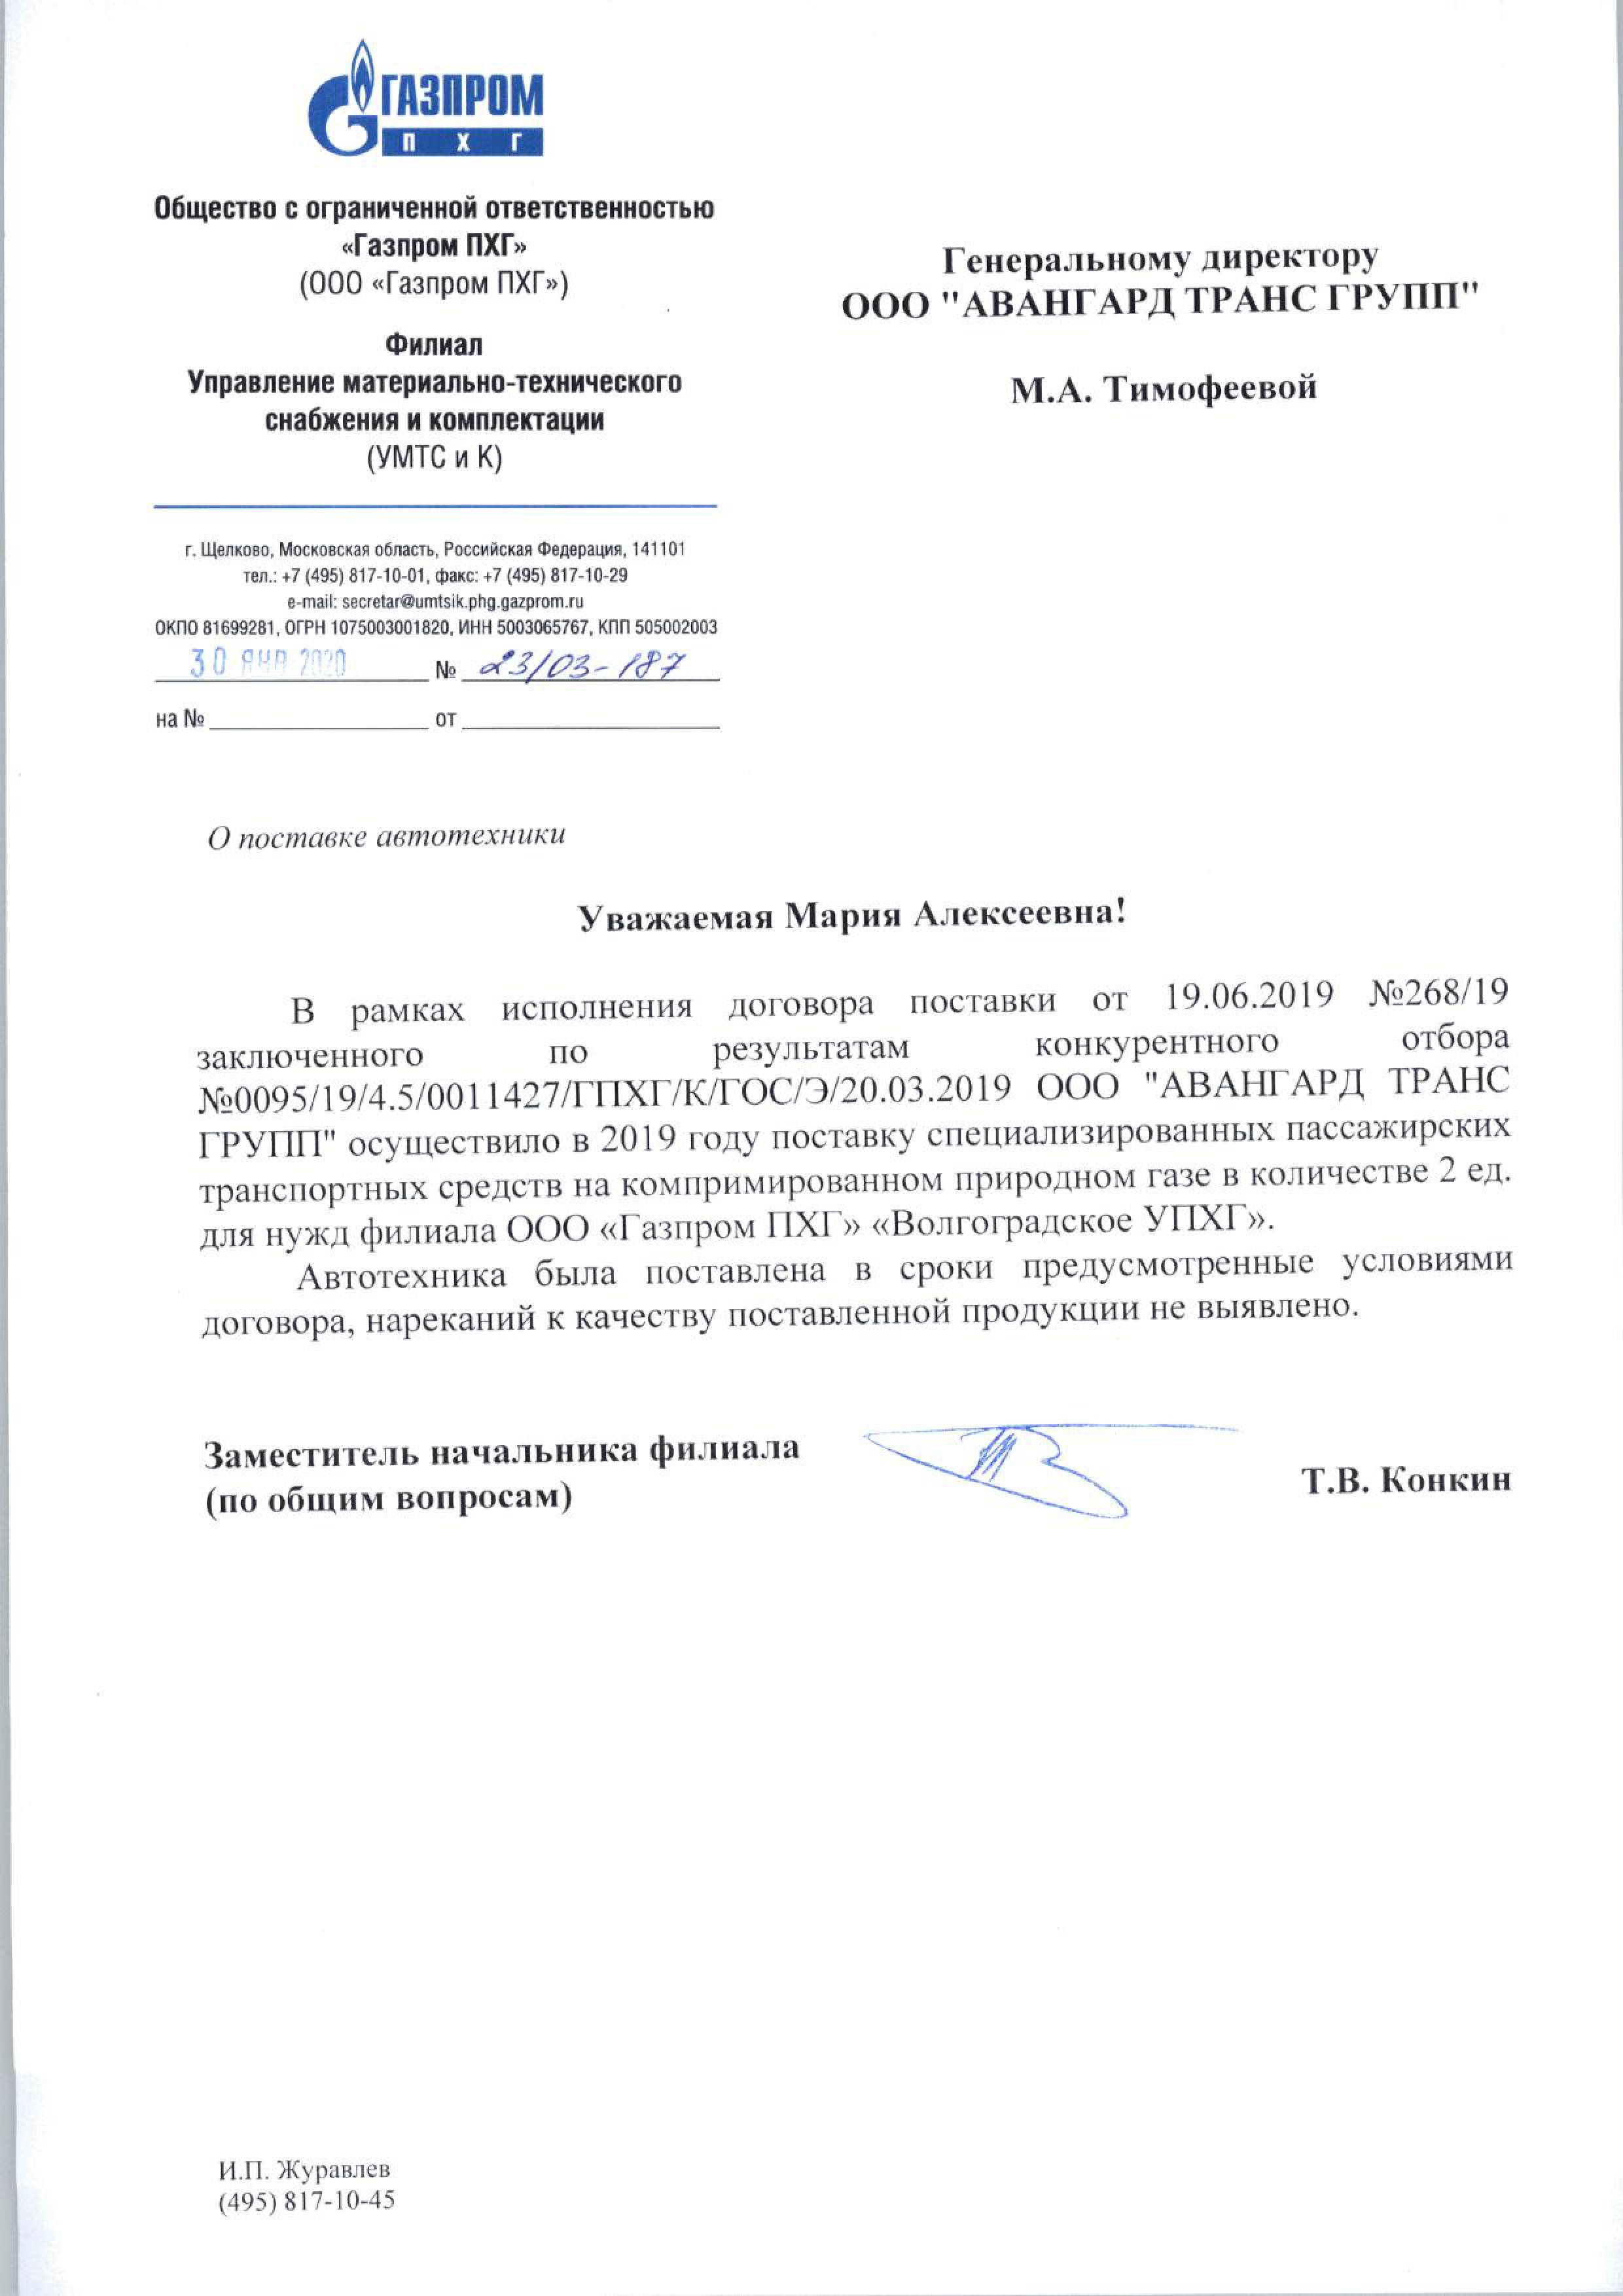 Отзыв к Договору № 268'19 от 19.06.2019г. от Газпром ПХГ